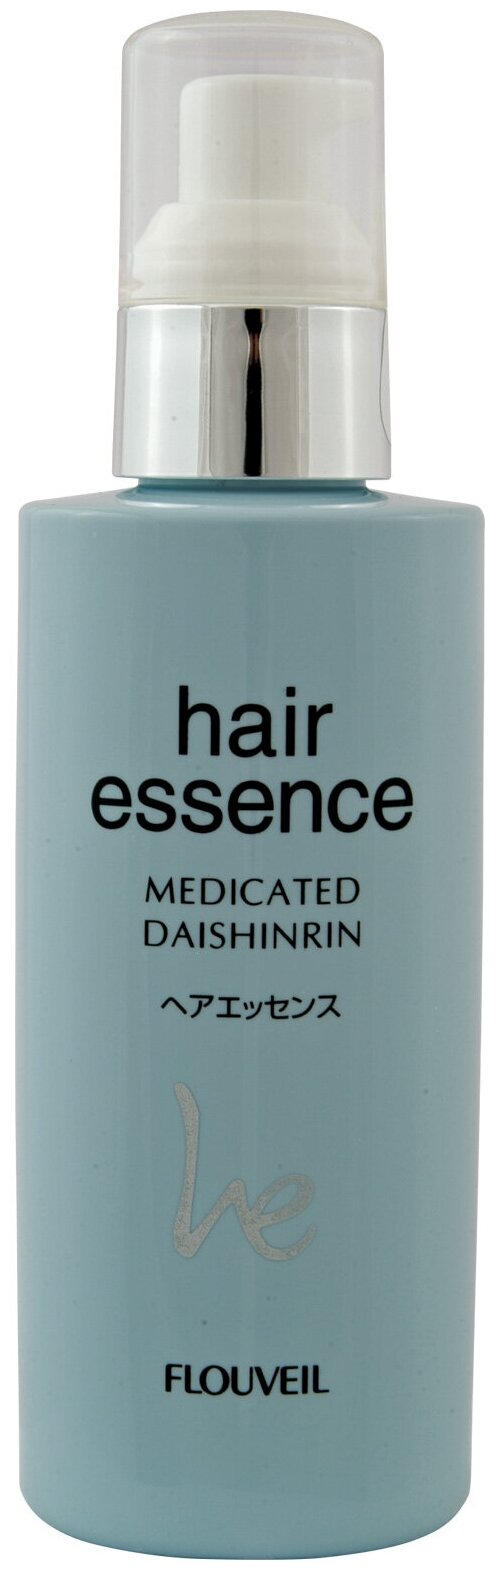 Восстанавливающая эссенция-сыворотка для поврежденных волос Salon De Flouveil Medicated Daishinrin Hair Essence, 150 г